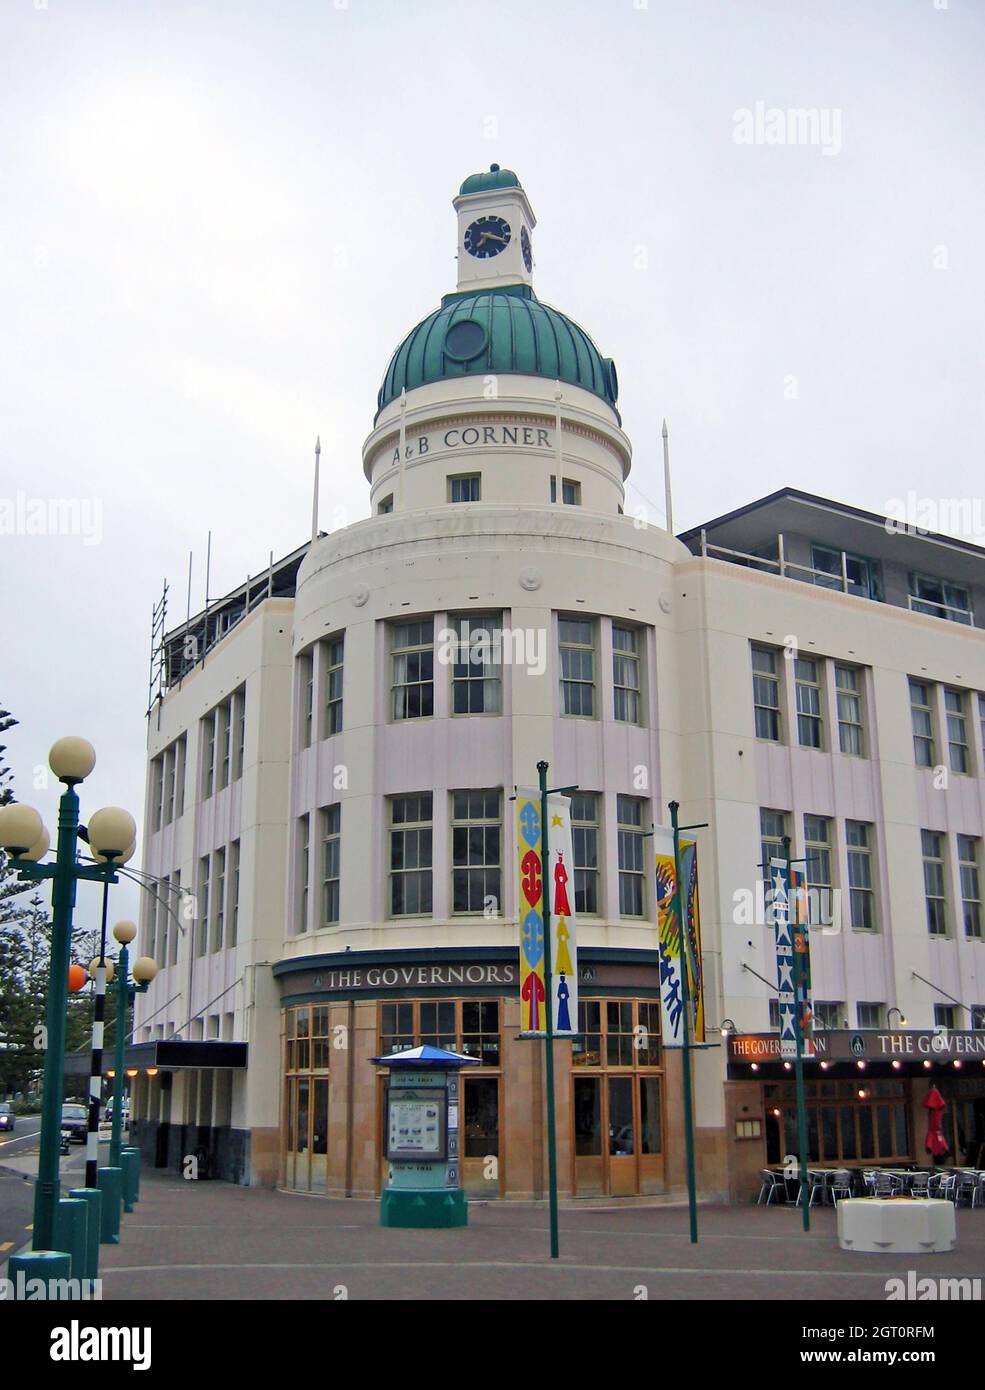 La storica Temporance and General Building, aperta nel 1936 per la Temporance and General Insurance Company a Napier, Hawkes Bay, Nuova Zelanda. Il punto di riferimento in stile art deco e' noto per la sua architettura che include le finestre arrotondate all'angolo della Marine Parade nel quartiere finanziario di Napier. L'edificio, conosciuto per il suo stile e l'orologio pubblico al suo pinnacolo, ospita anche il Governors Inn. Napier è nota per la sua alta concentrazione di edifici in stile art deco che era dovuto al terremoto di Hawke's Bay 1931, livellando la città, che ha portato alla costruzione durante il periodo in stile art deco. Foto Stock